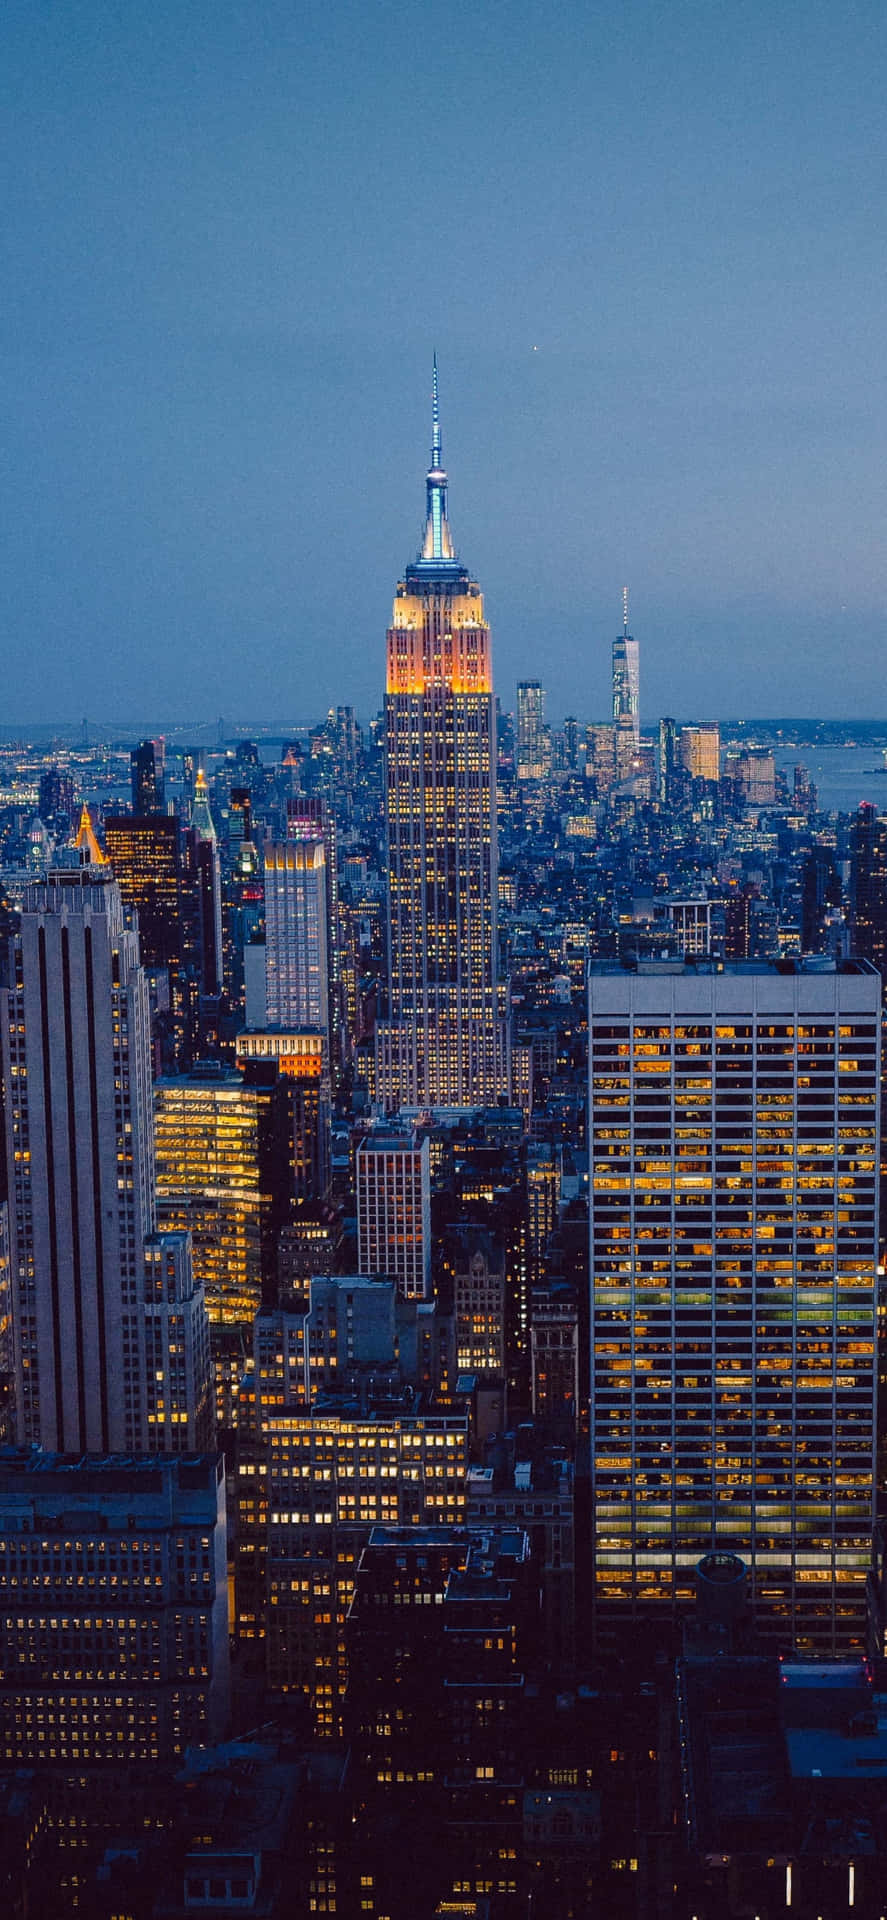 Fondode Pantalla De Luces Del Empire State En La Ciudad De Nueva York En Un Iphone X.